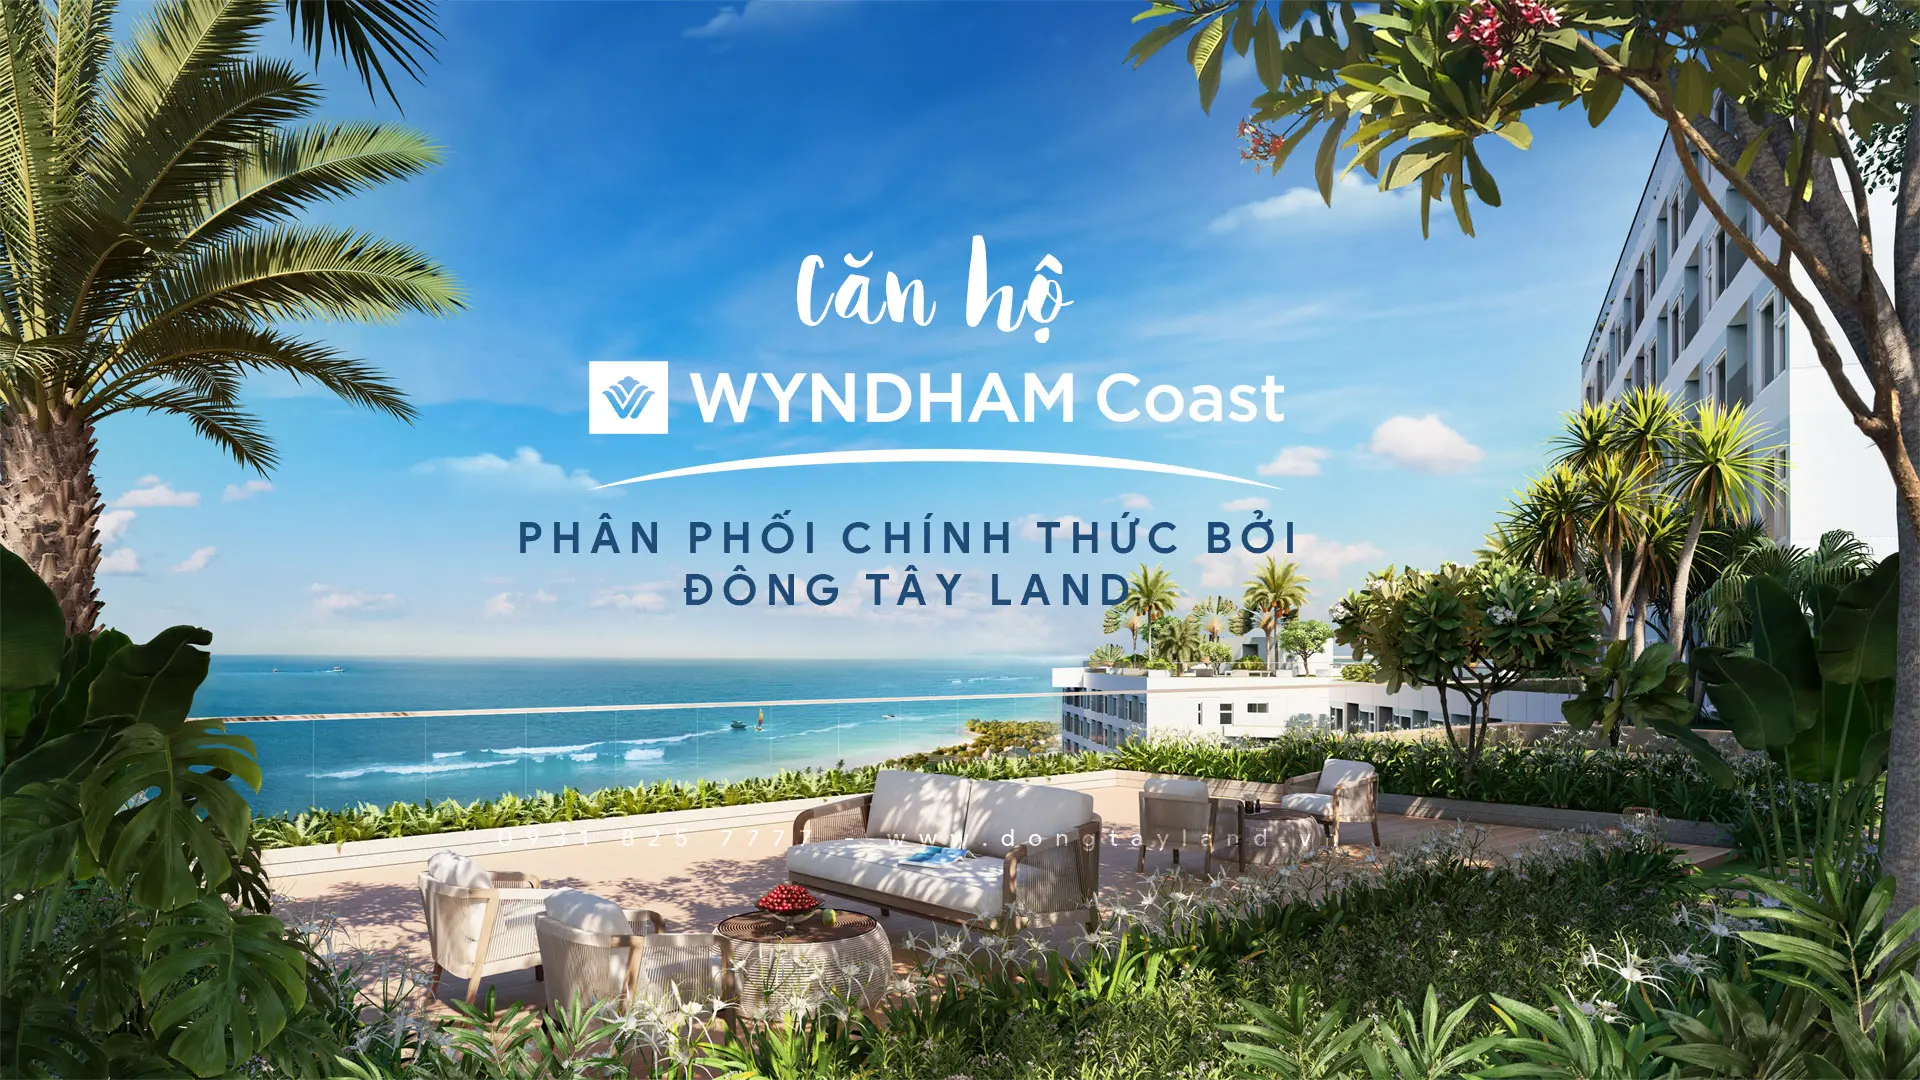 Đông Tây Land phân phối chính thức căn hộ Wyndham Coast by Thanh Long Bay